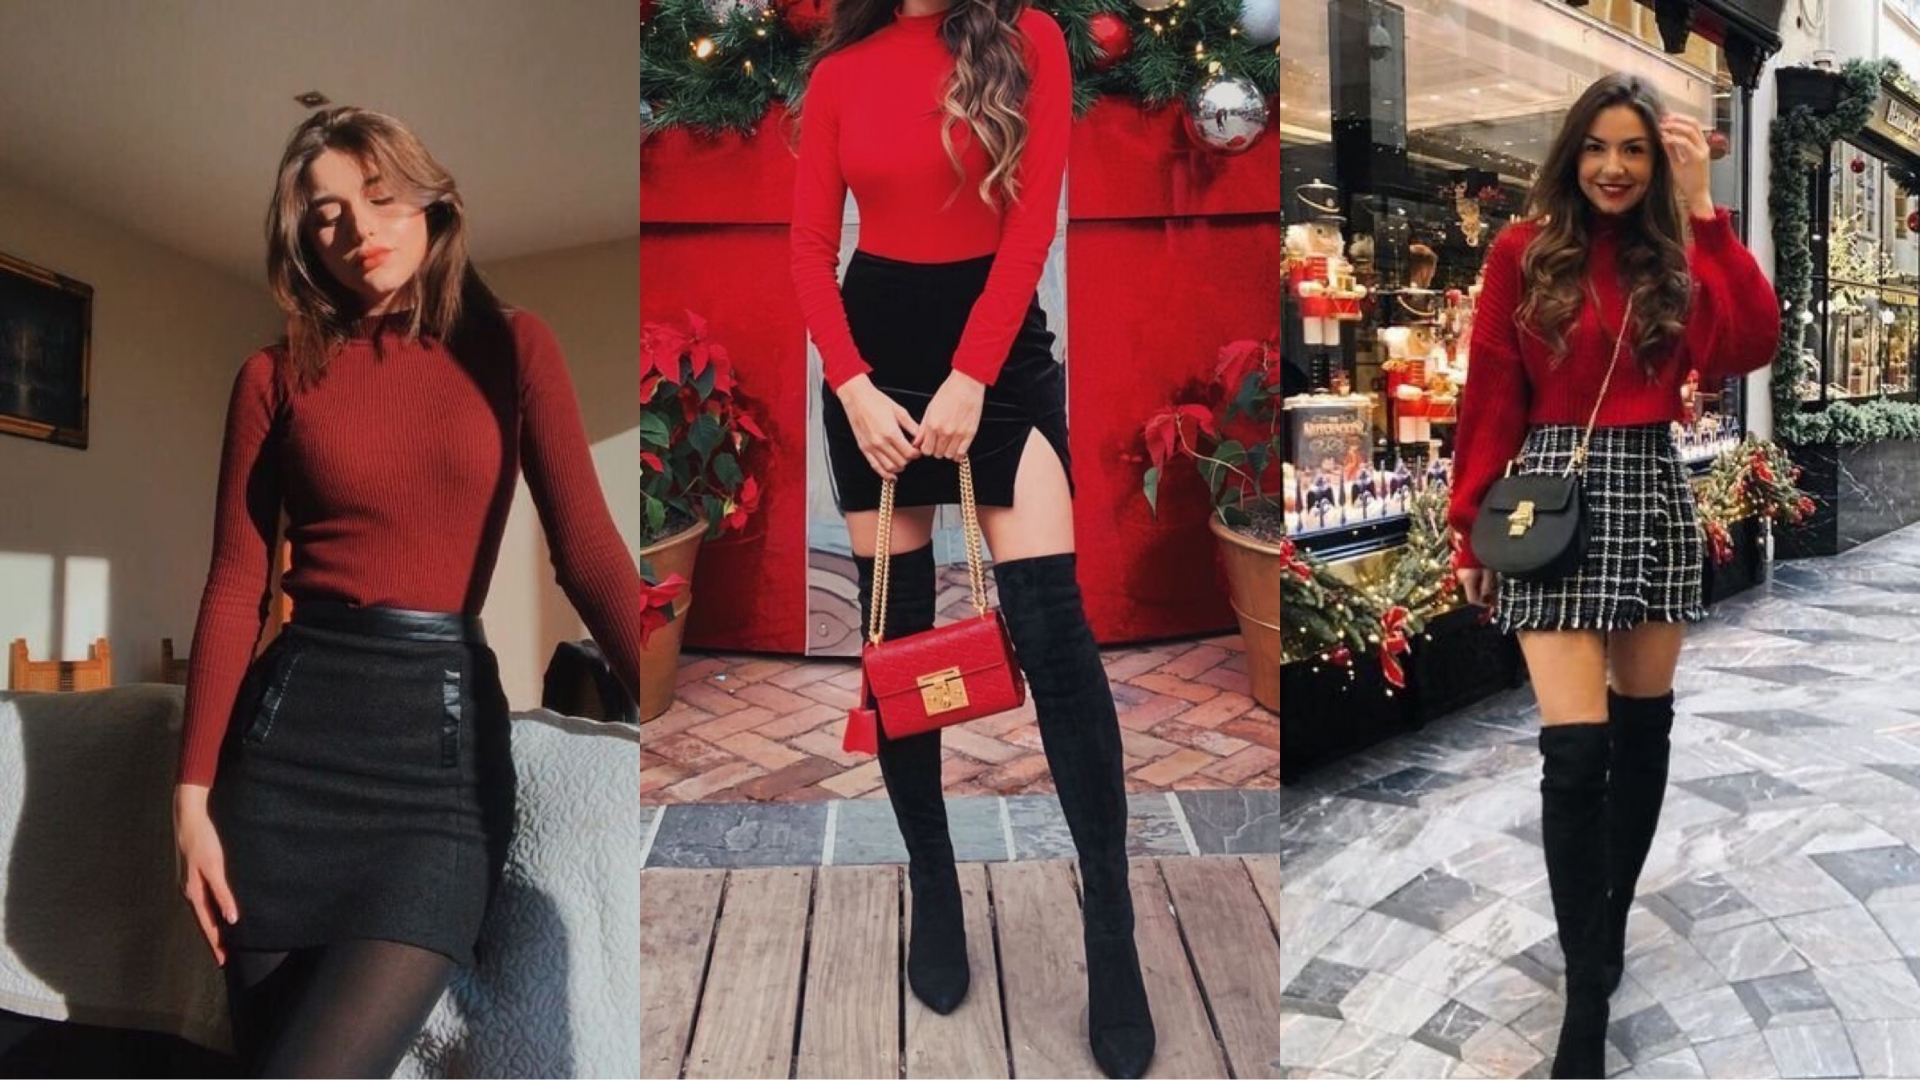 Giáng sinh năm nay, bạn hãy biến mình thành một quý cô sành điệu và nổi bật với combo áo len đỏ, chân váy ngắn và boots cao gối. Bạn có thể chọn chân váy đen đơn giản hoặc chân váy caro trông thật trẻ trung nhé.